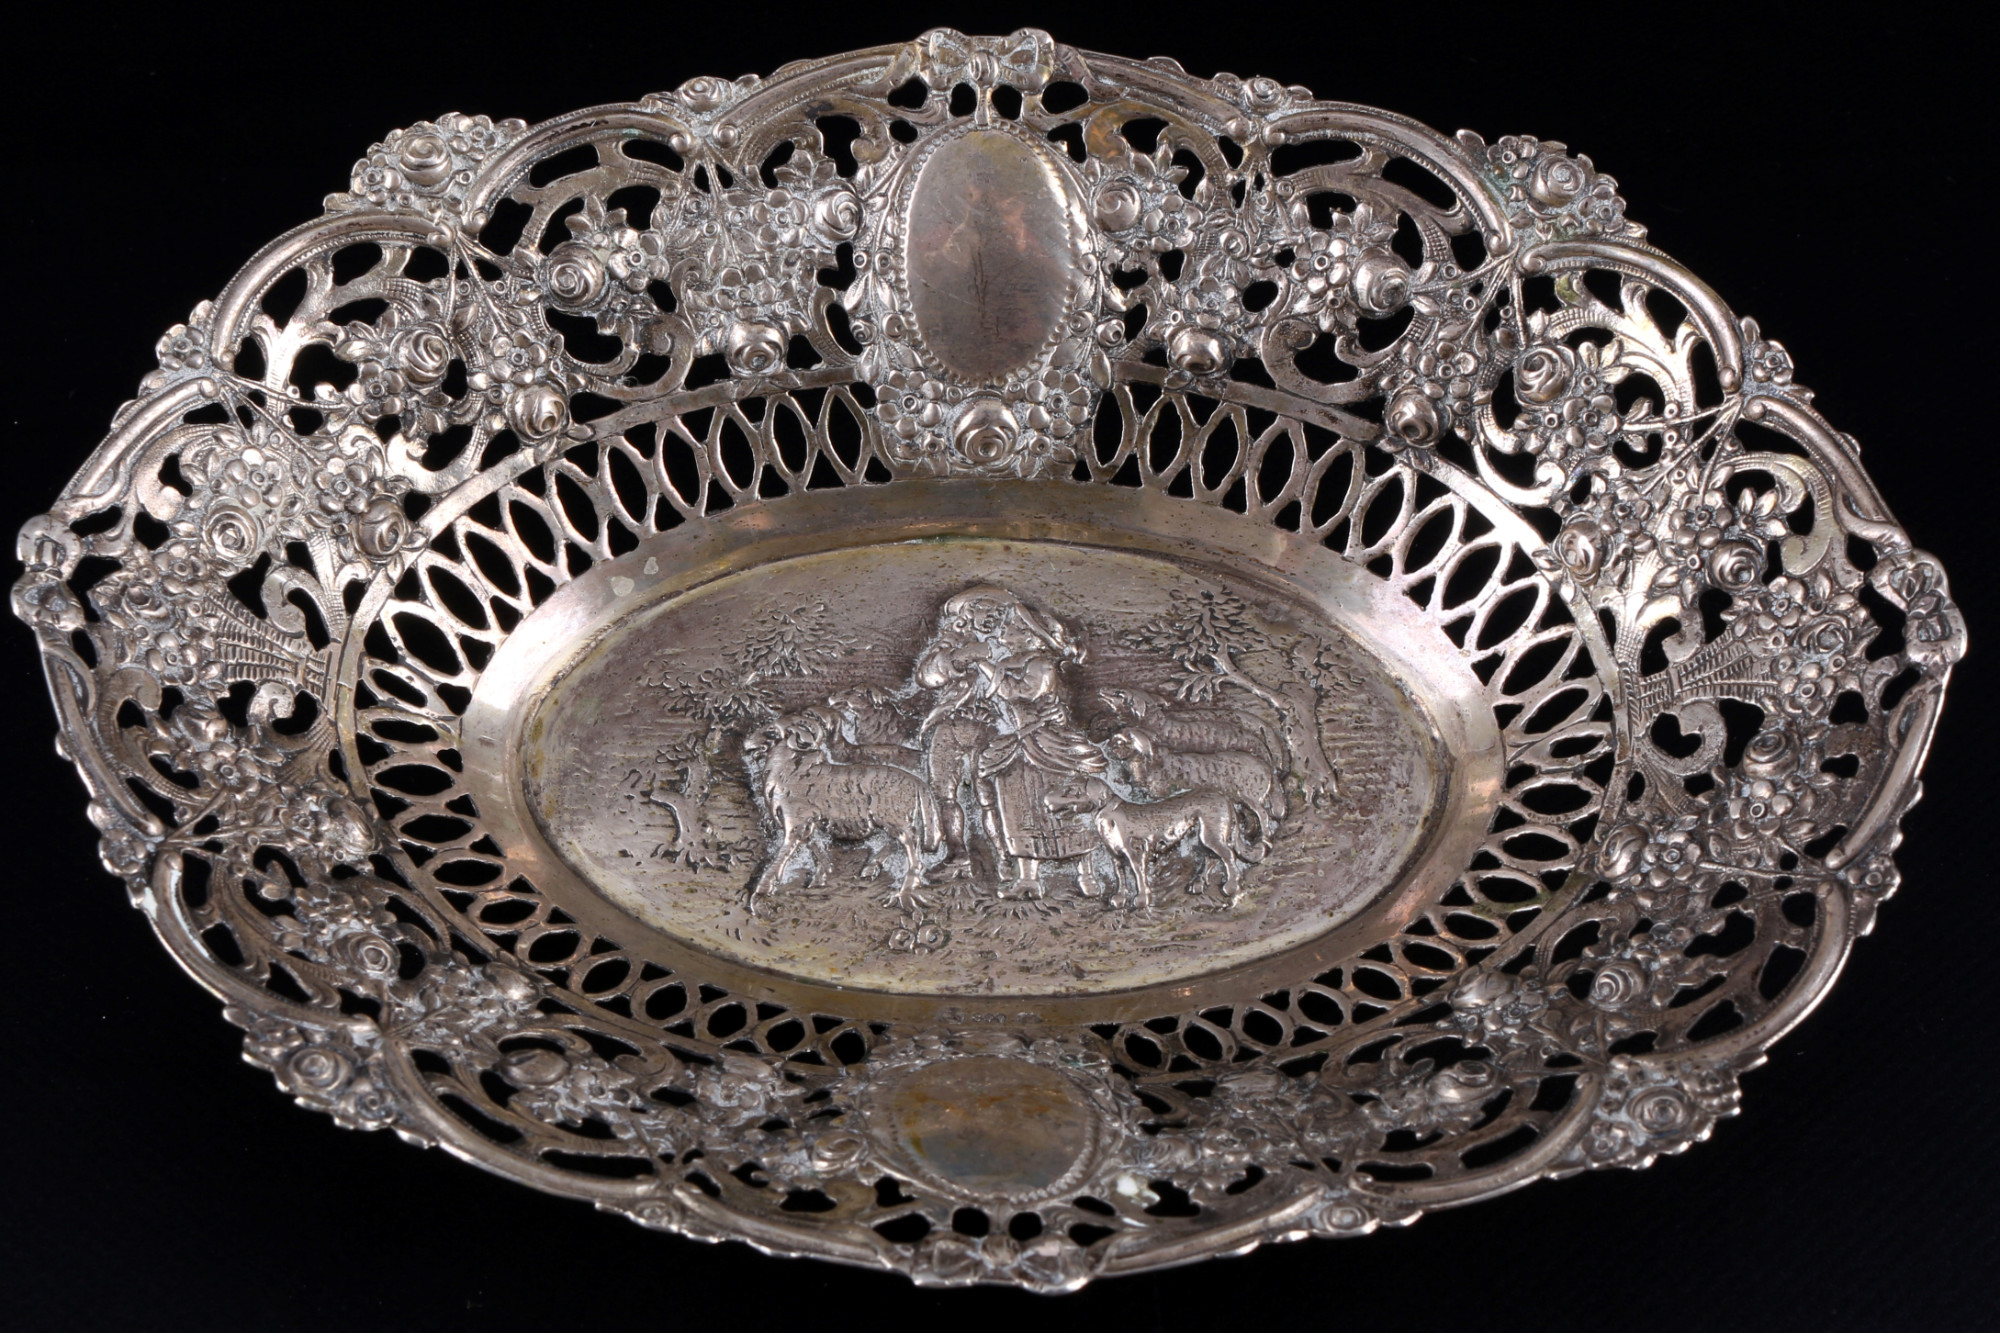 800 / 835 silver 3 cutwork bowls with cherub and shephard sceneries, Silber Durchbruchschalen, - Image 3 of 5